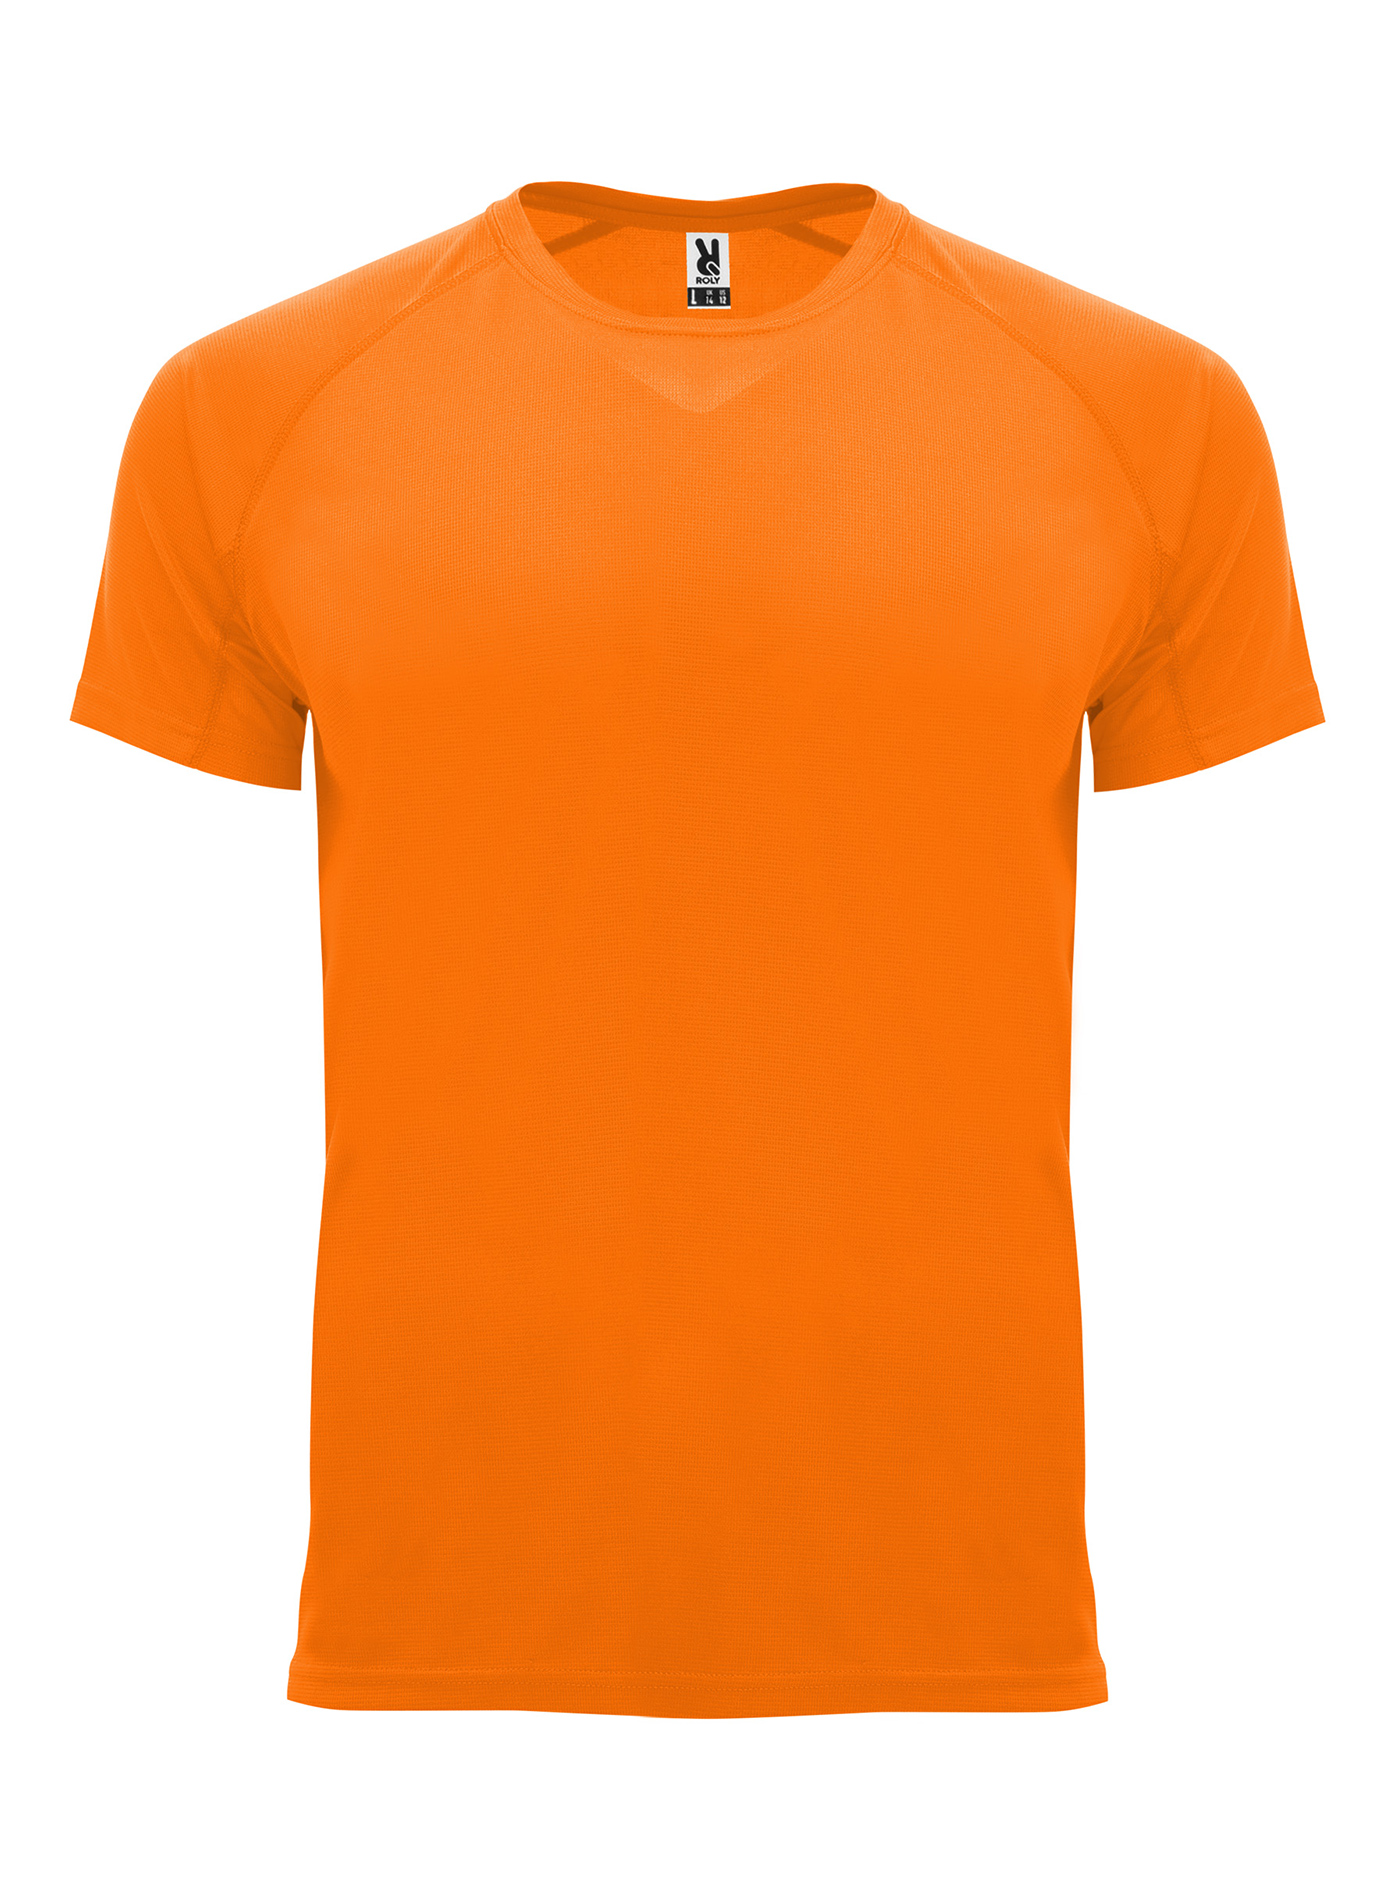 Pánské sportovní tričko Roly Bahrain - Neonová oranžová XXL